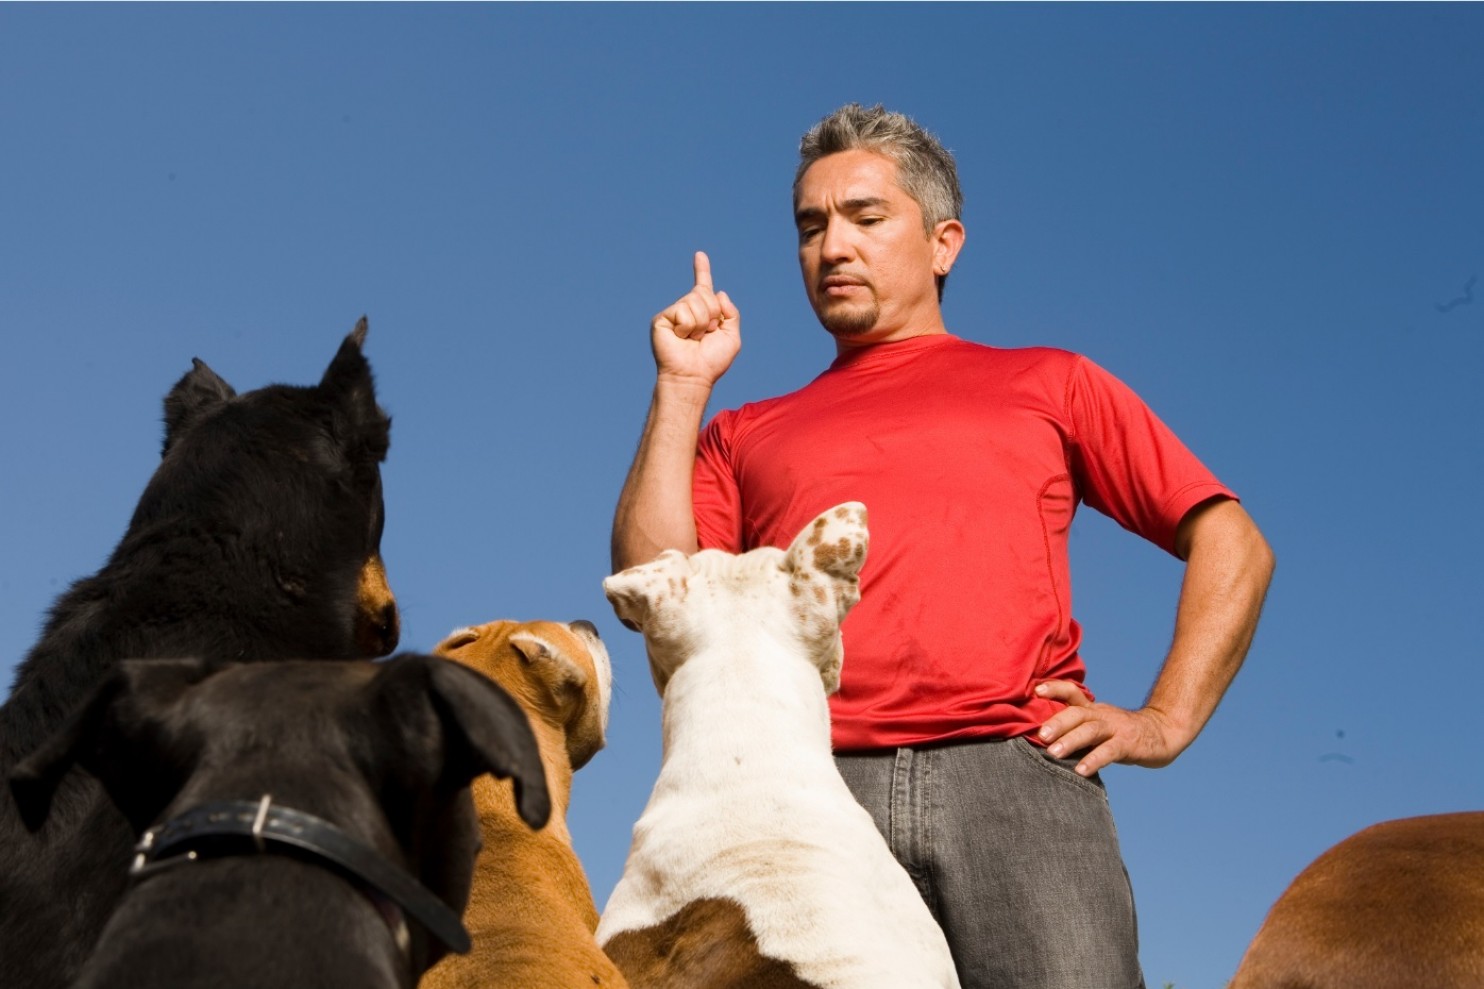 El “encantador de perros” César Millán no afrontará cargos de crueldad animal